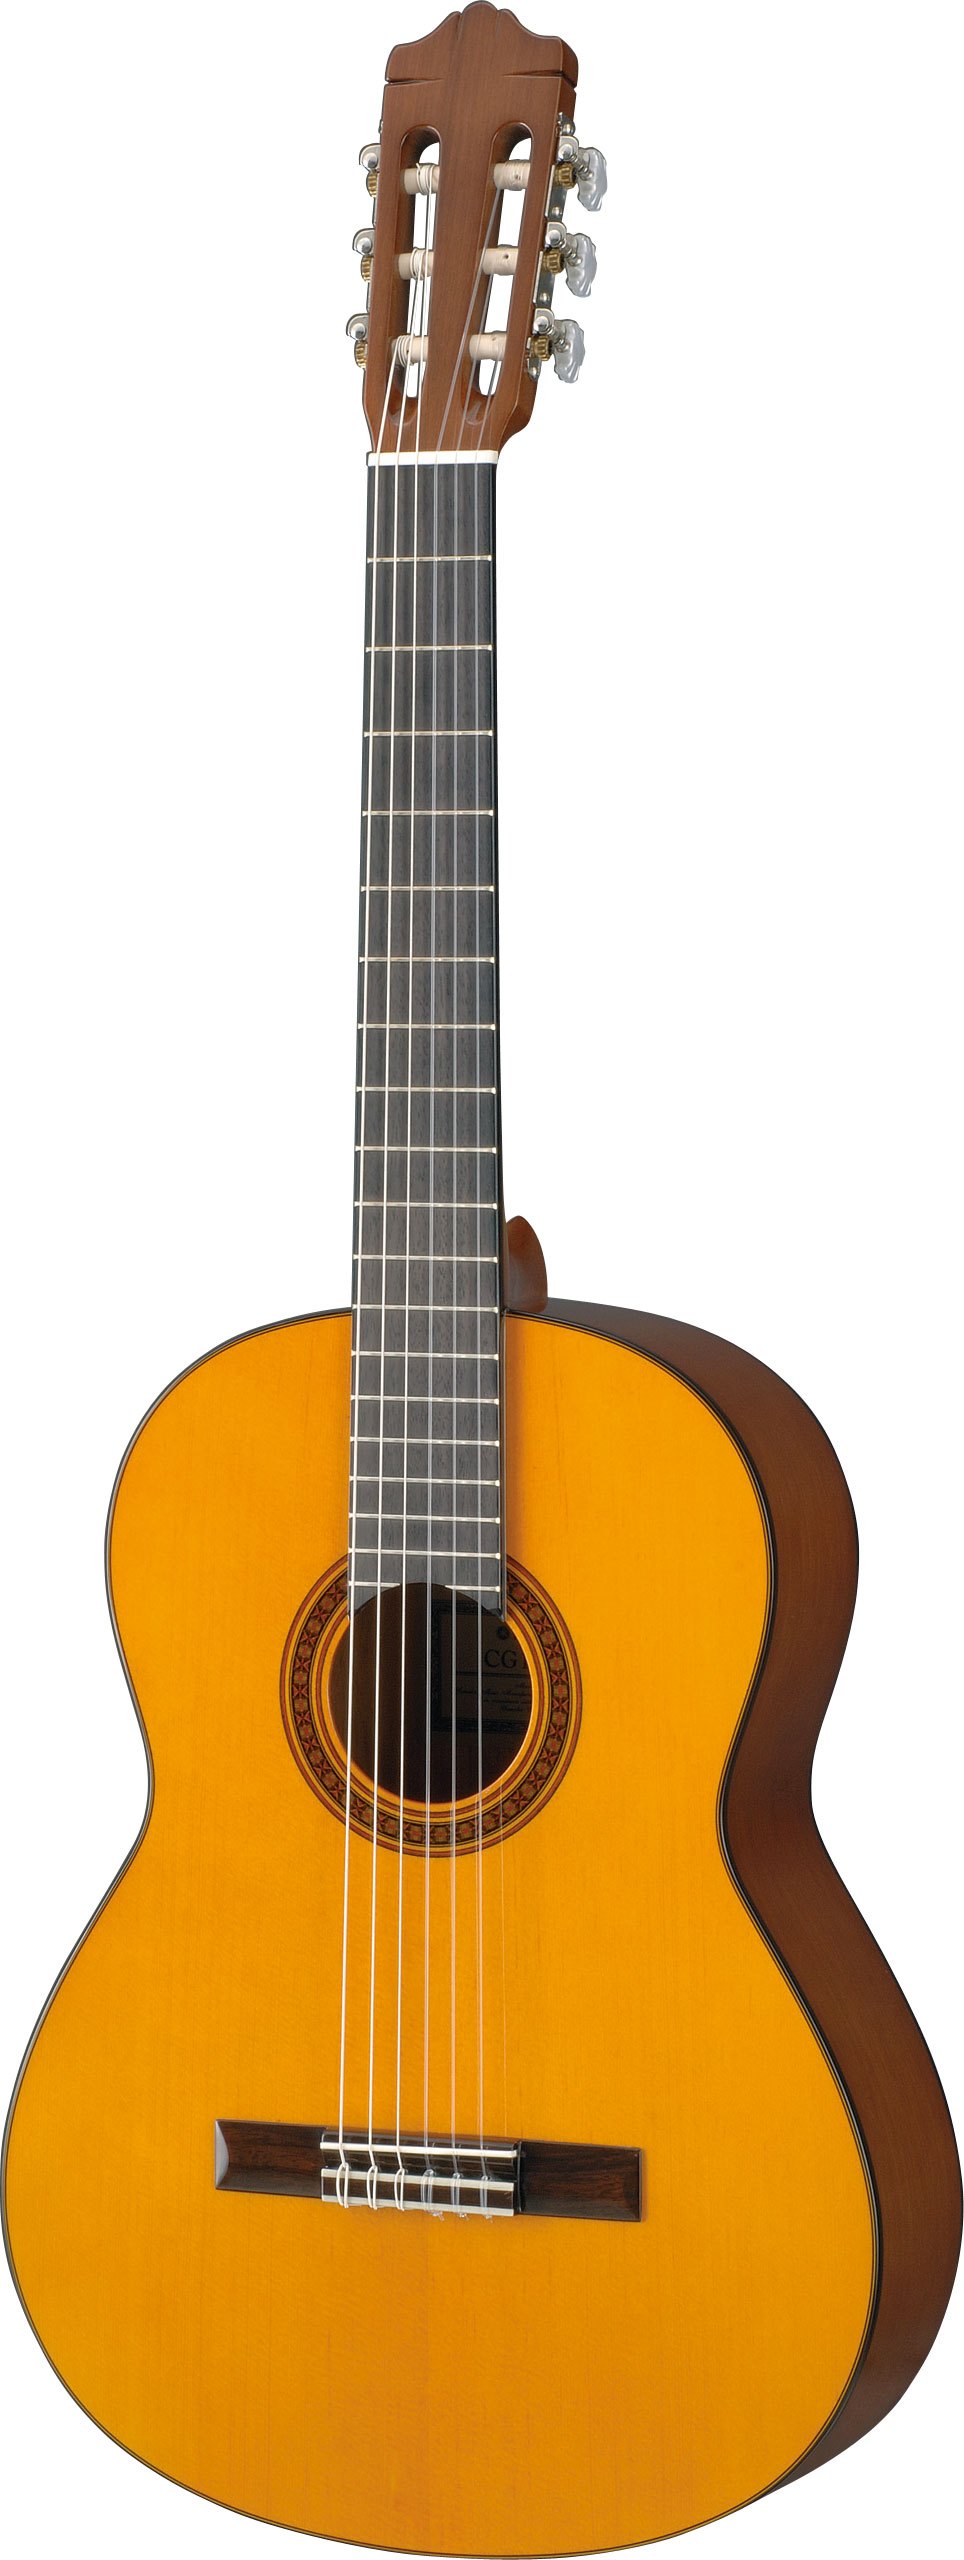 ヤマハ | CG101A - クラシックギター・ナイロン弦ギター - 概要